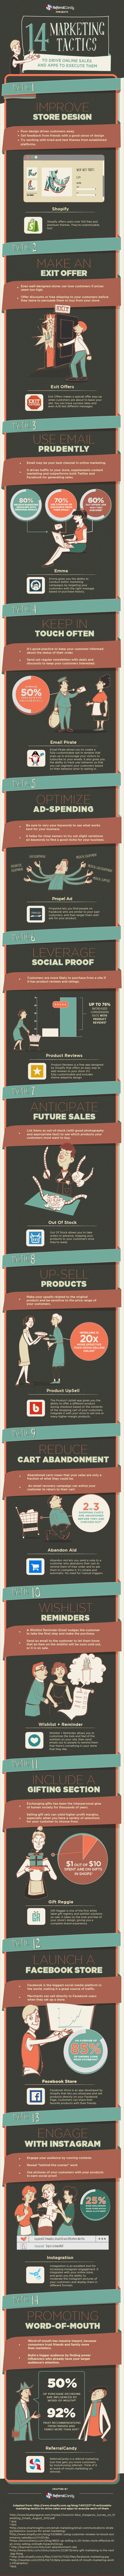 14-marketing-strategies-to-increase-online-sales